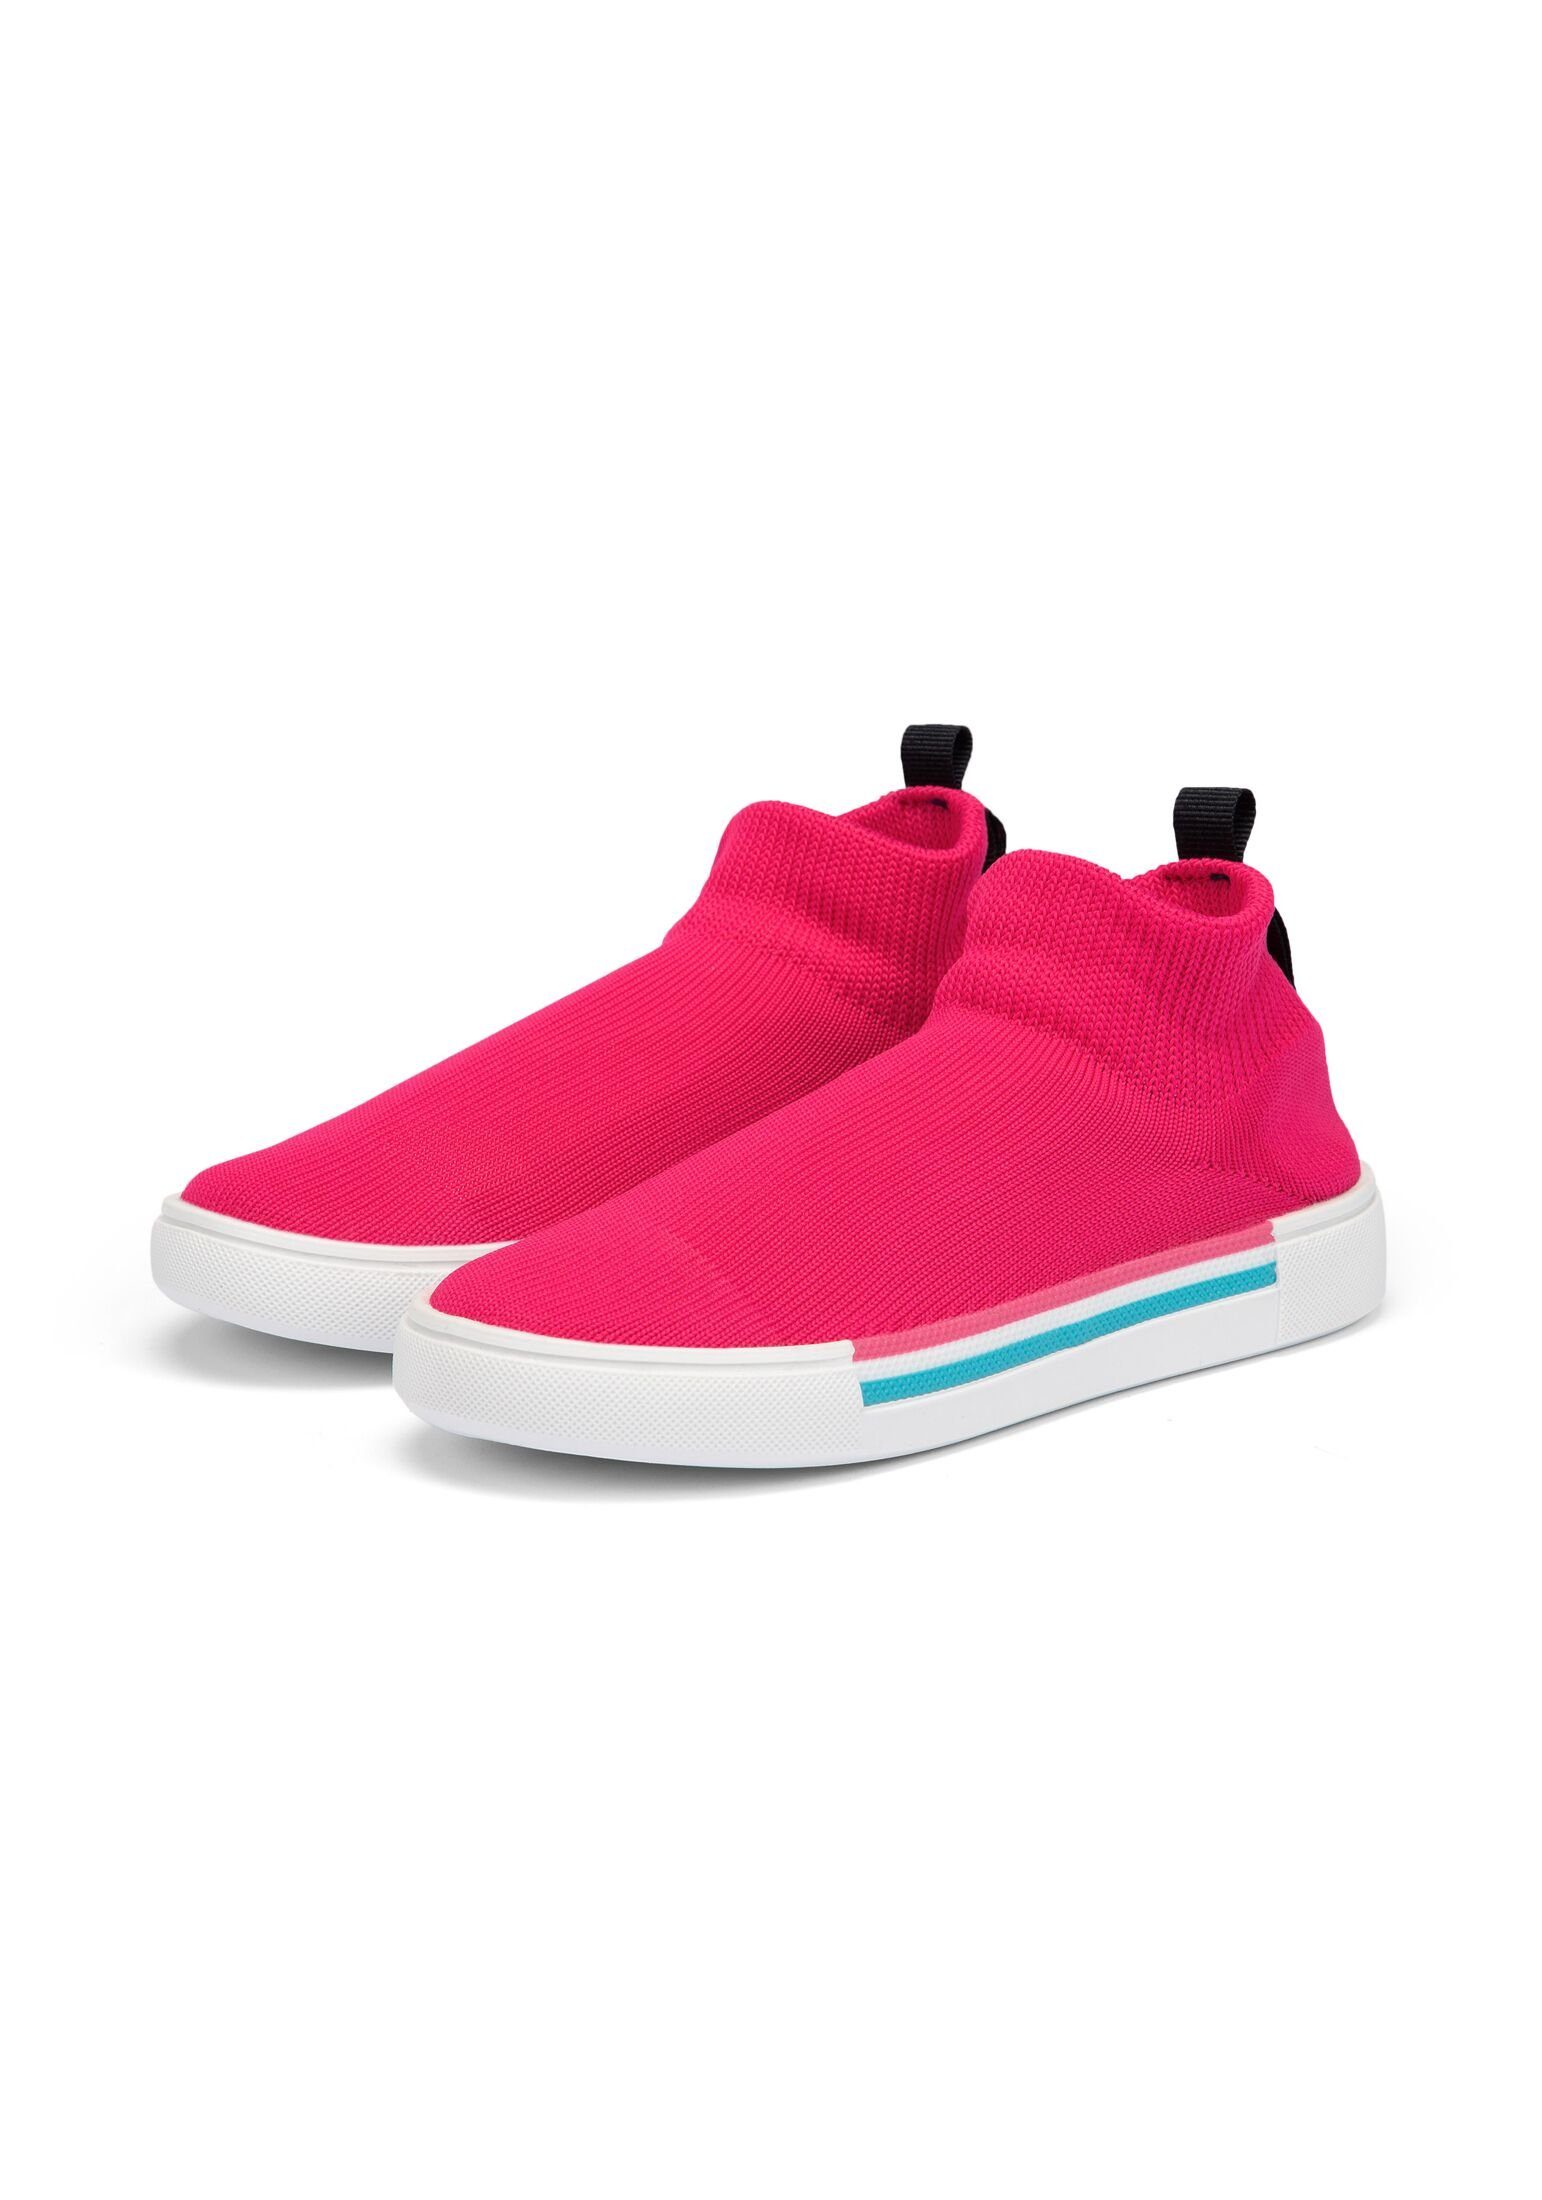 Camano phlox 1er Slipper Slip-On pink Pack Sneaker